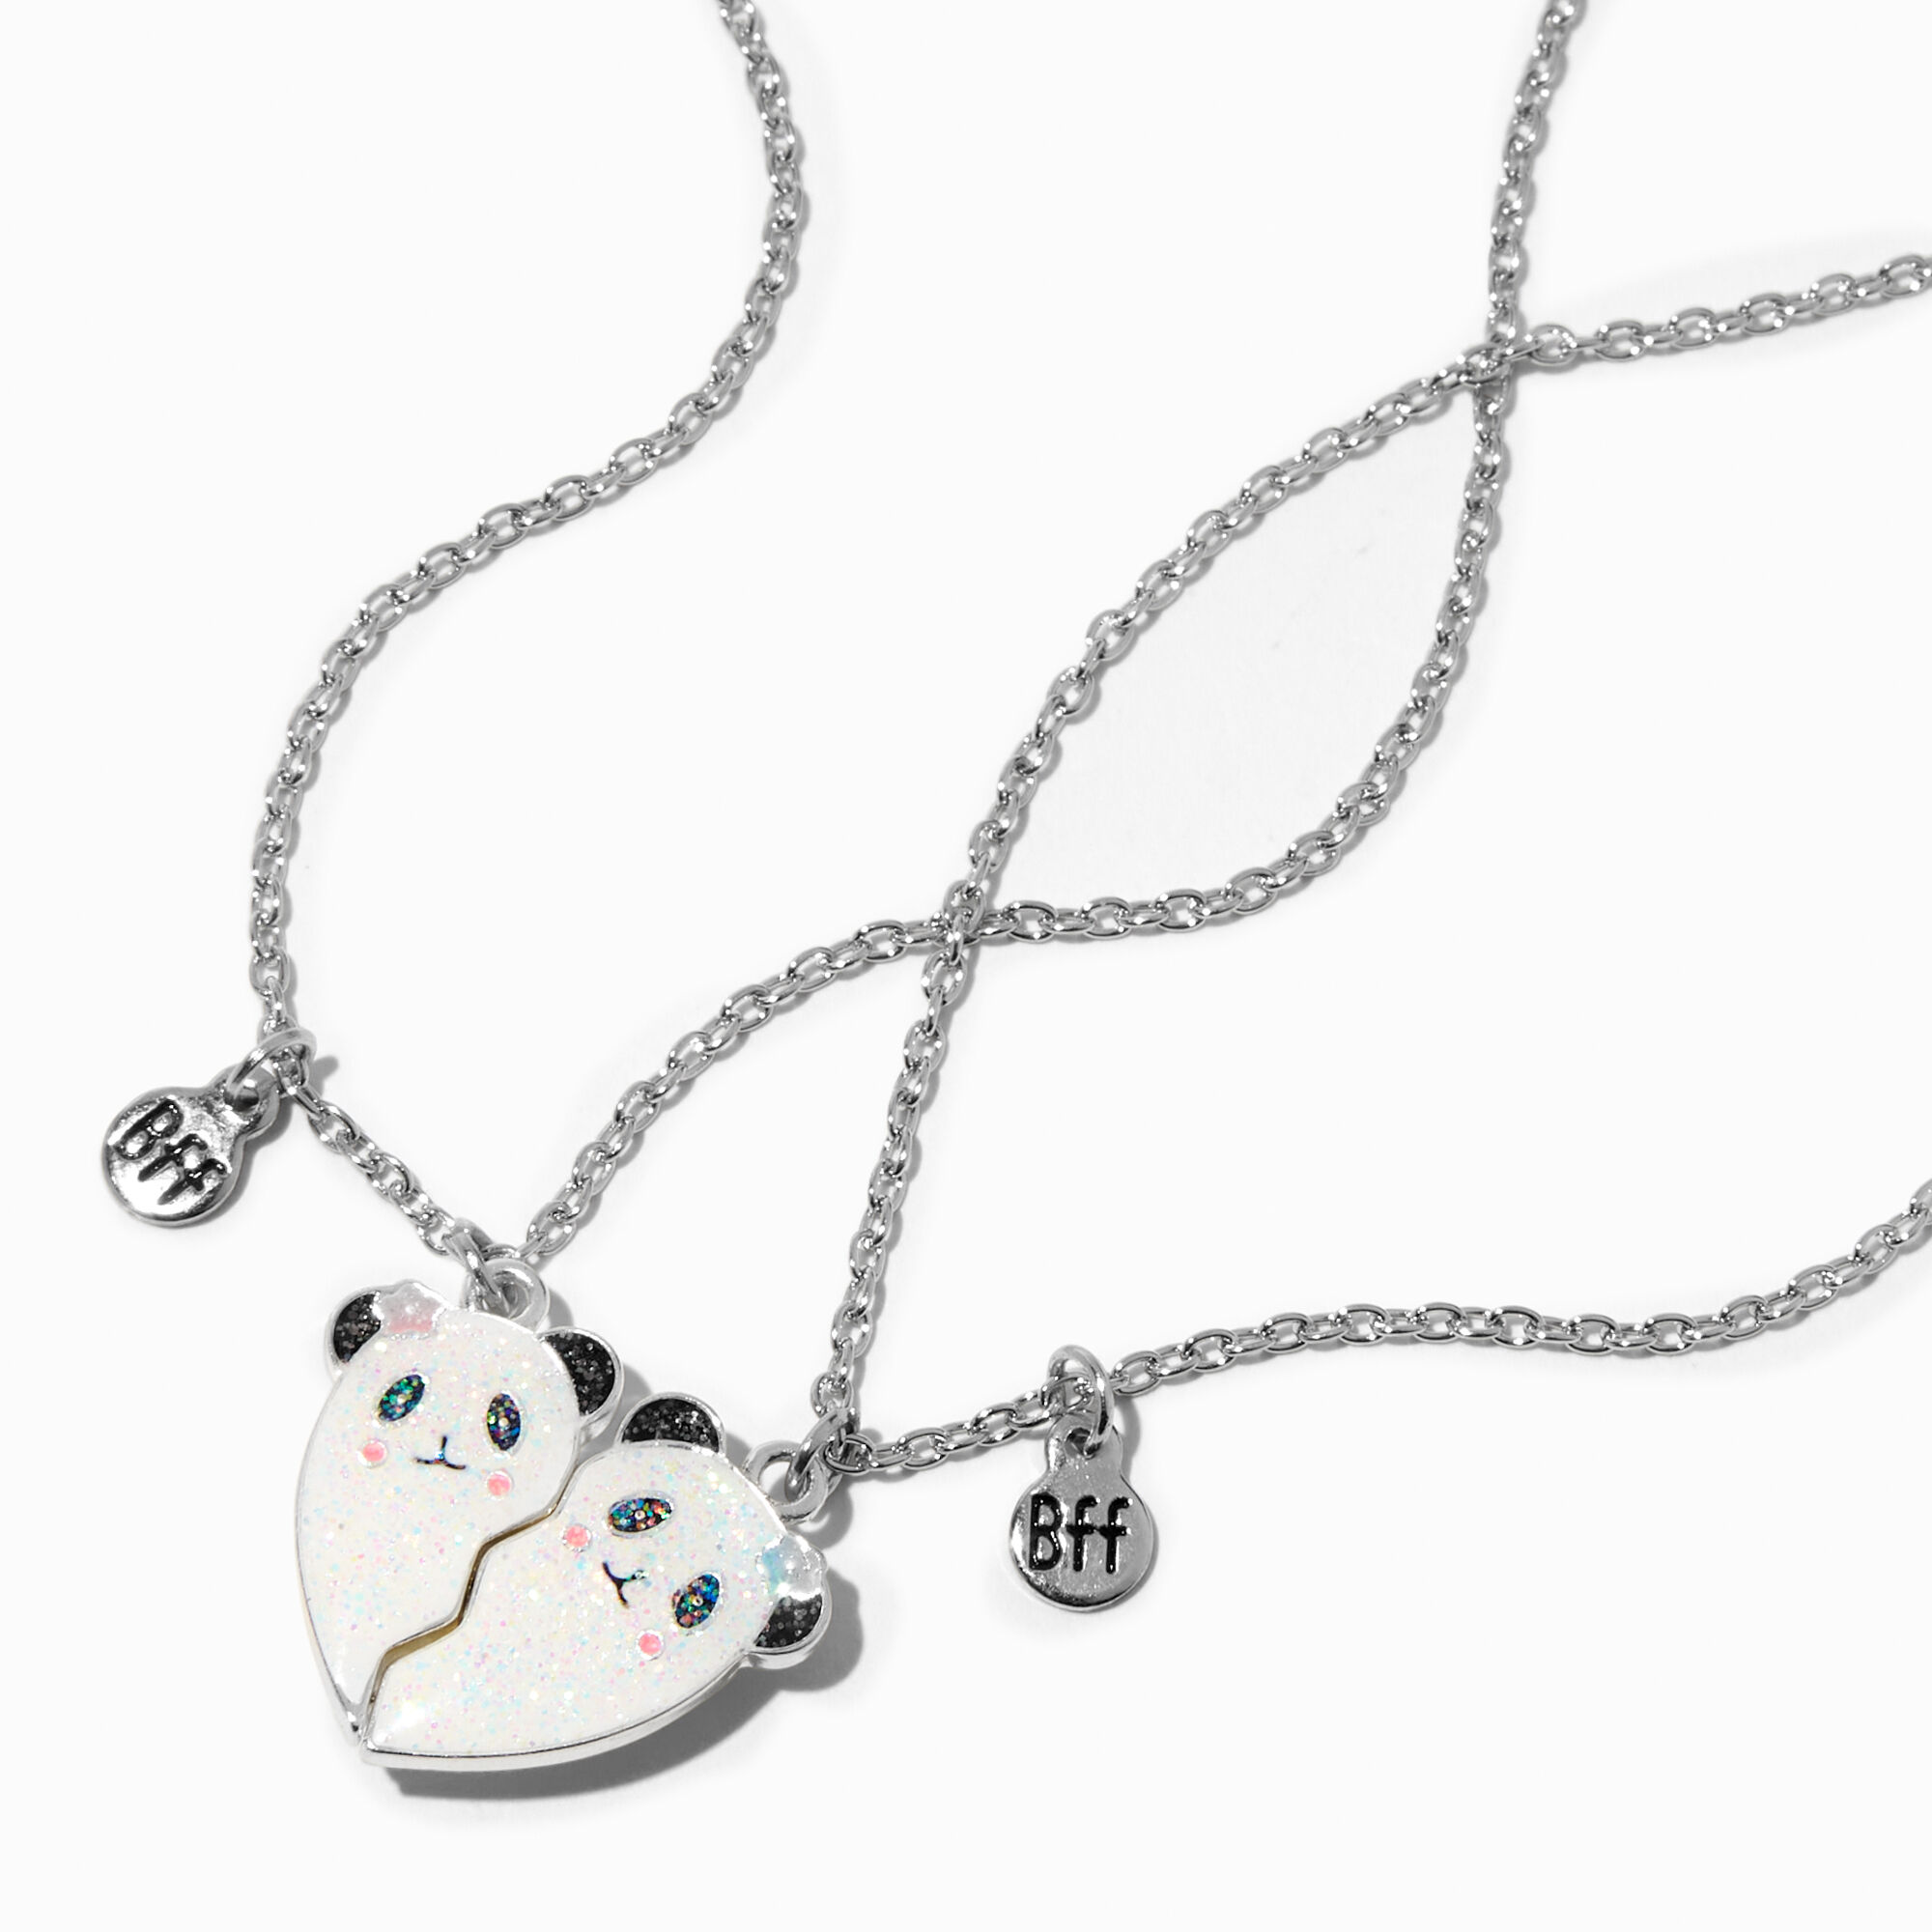 View Claires Best Friends Panda Split Heart Pendant Necklaces 2 Pack Silver information